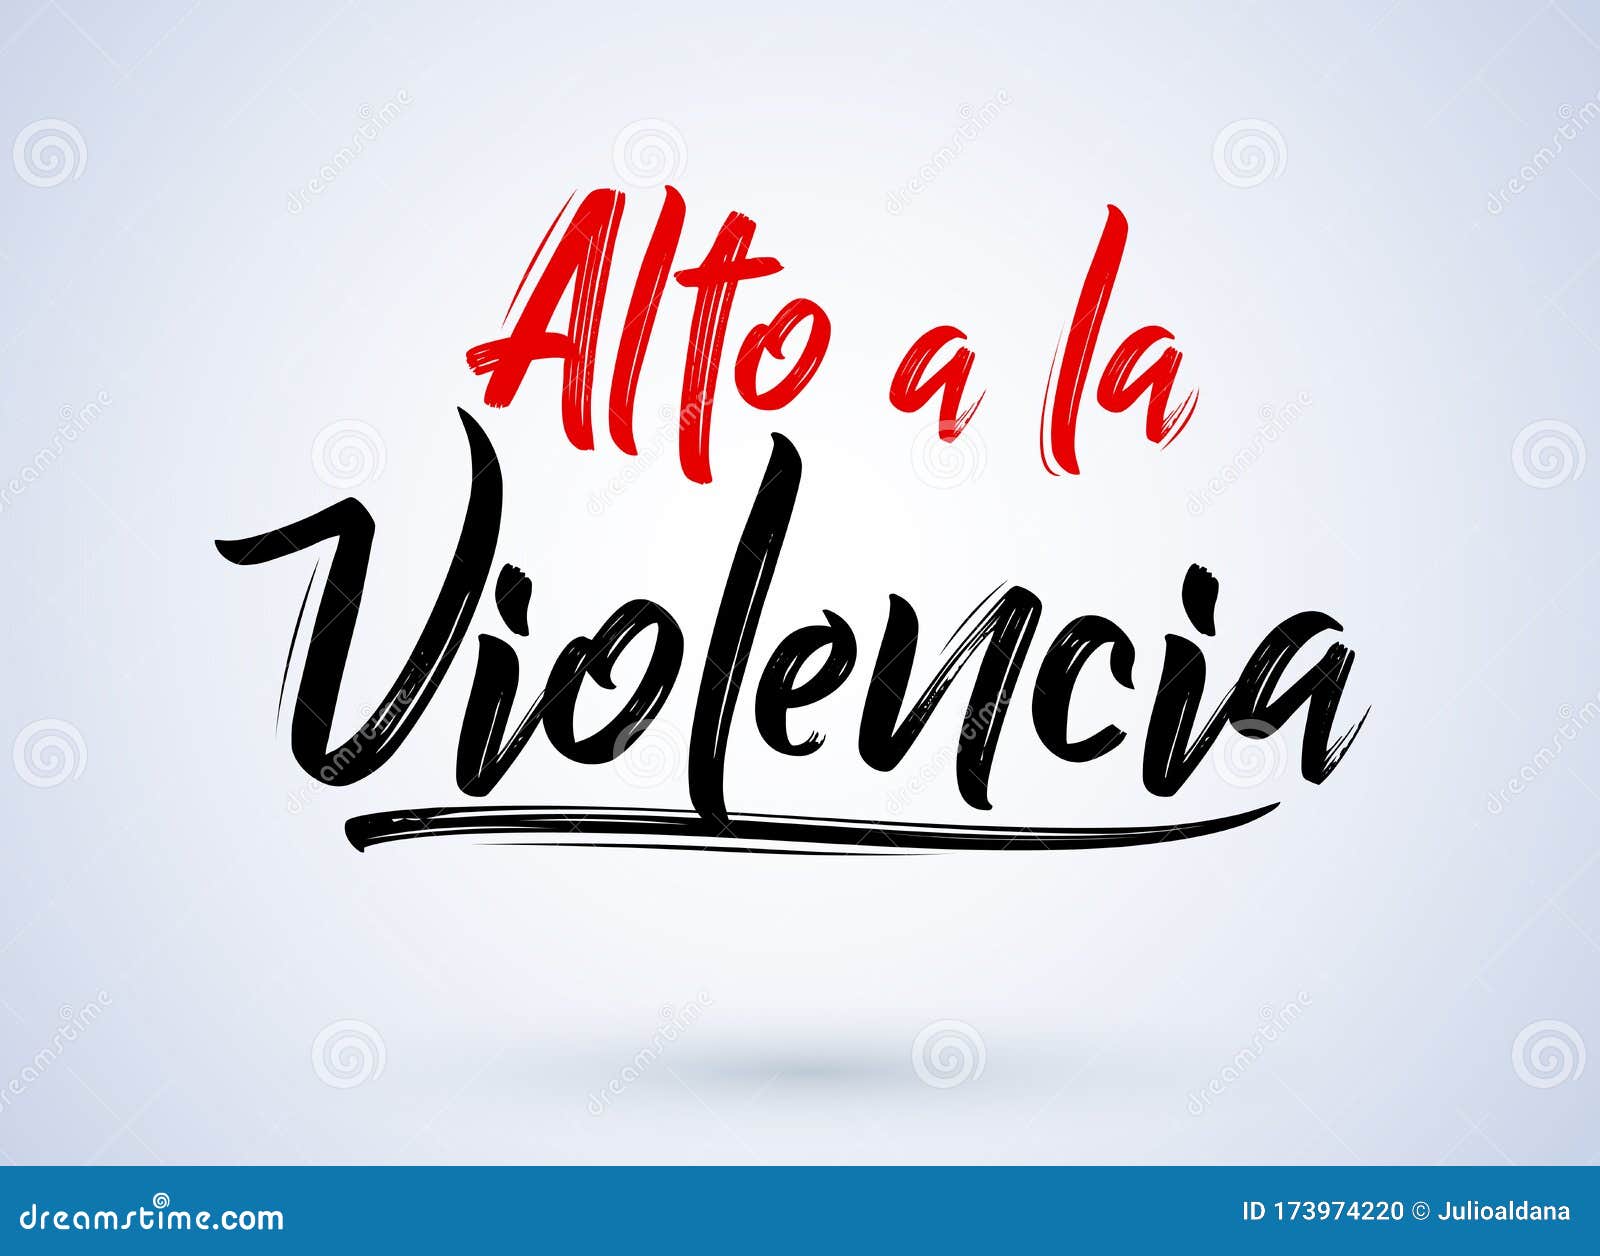 alto a la violencia, stop the violence spanish text,  .